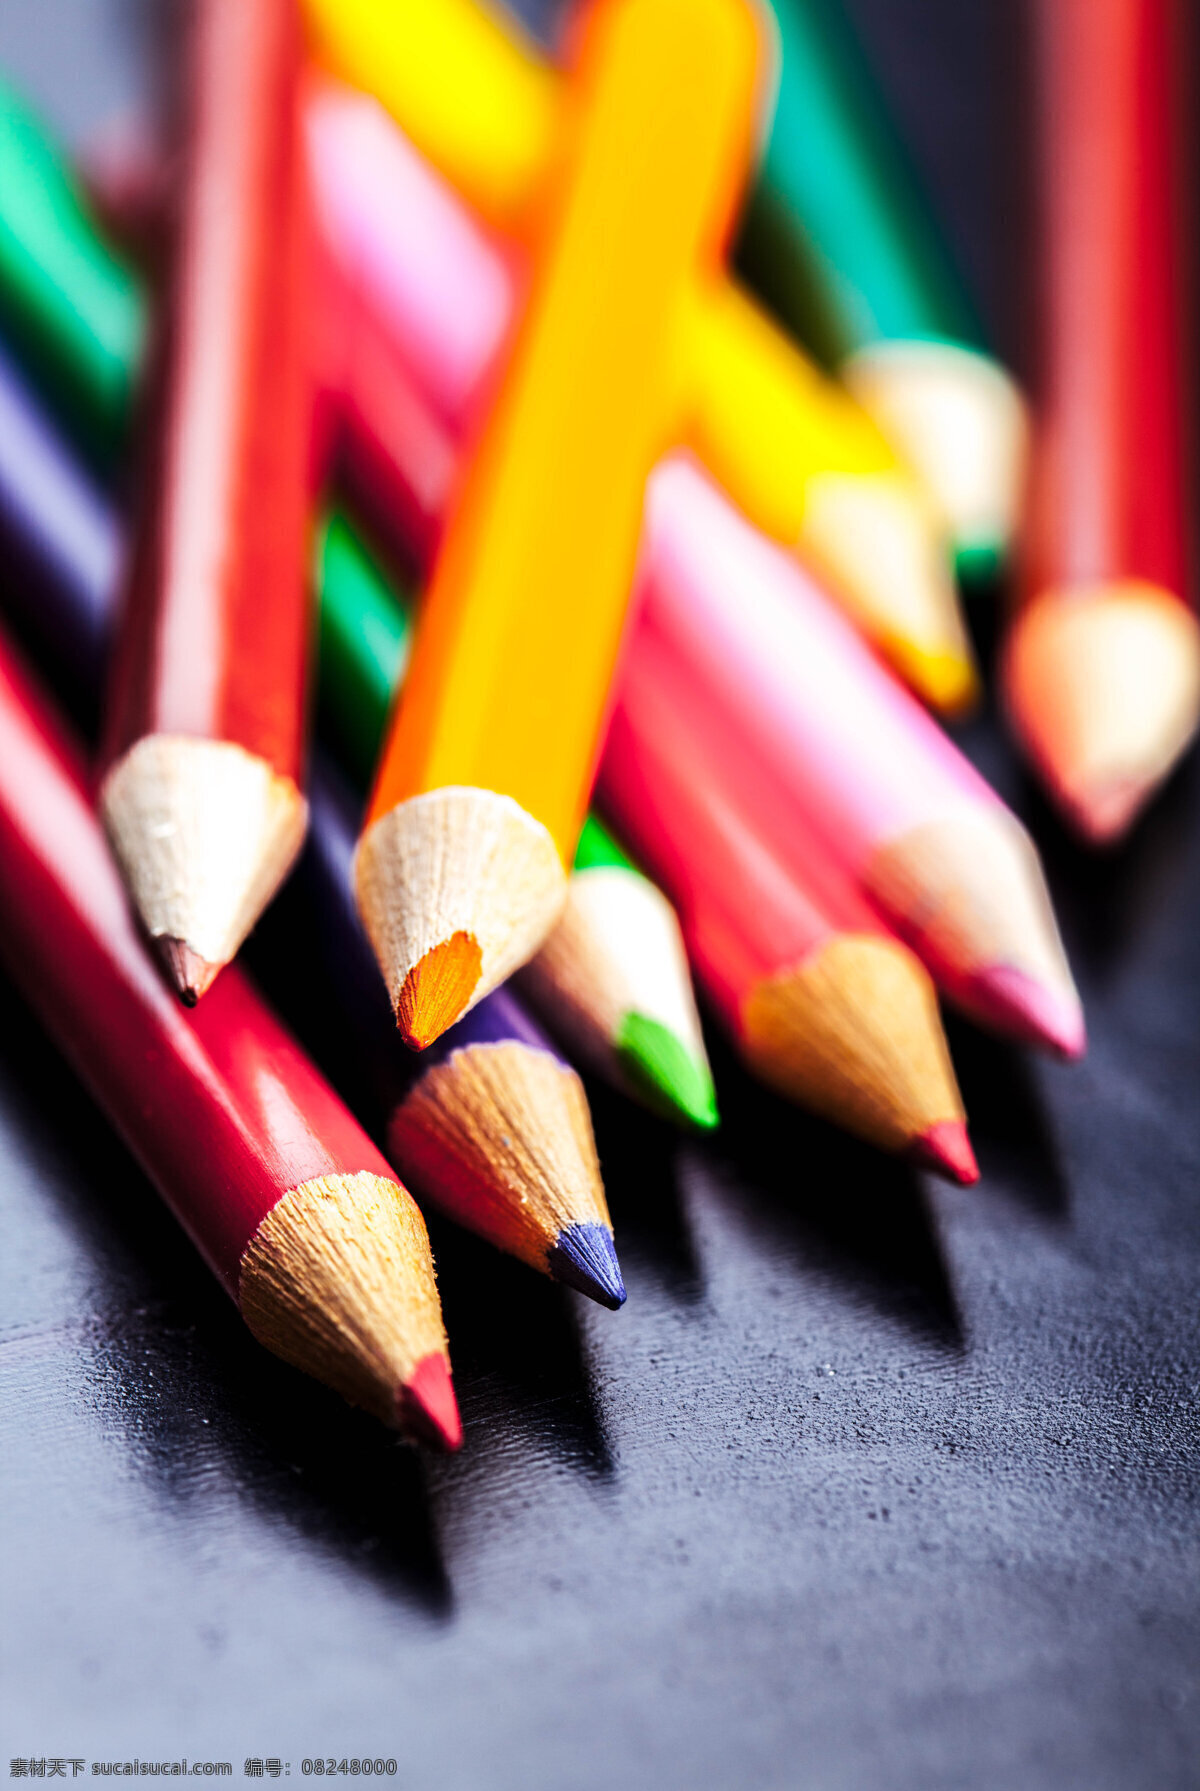 堆 画笔 学习教育 铅笔 笔 绘画笔 彩色铅笔 学习文具 学习用品 办公学习 生活百科